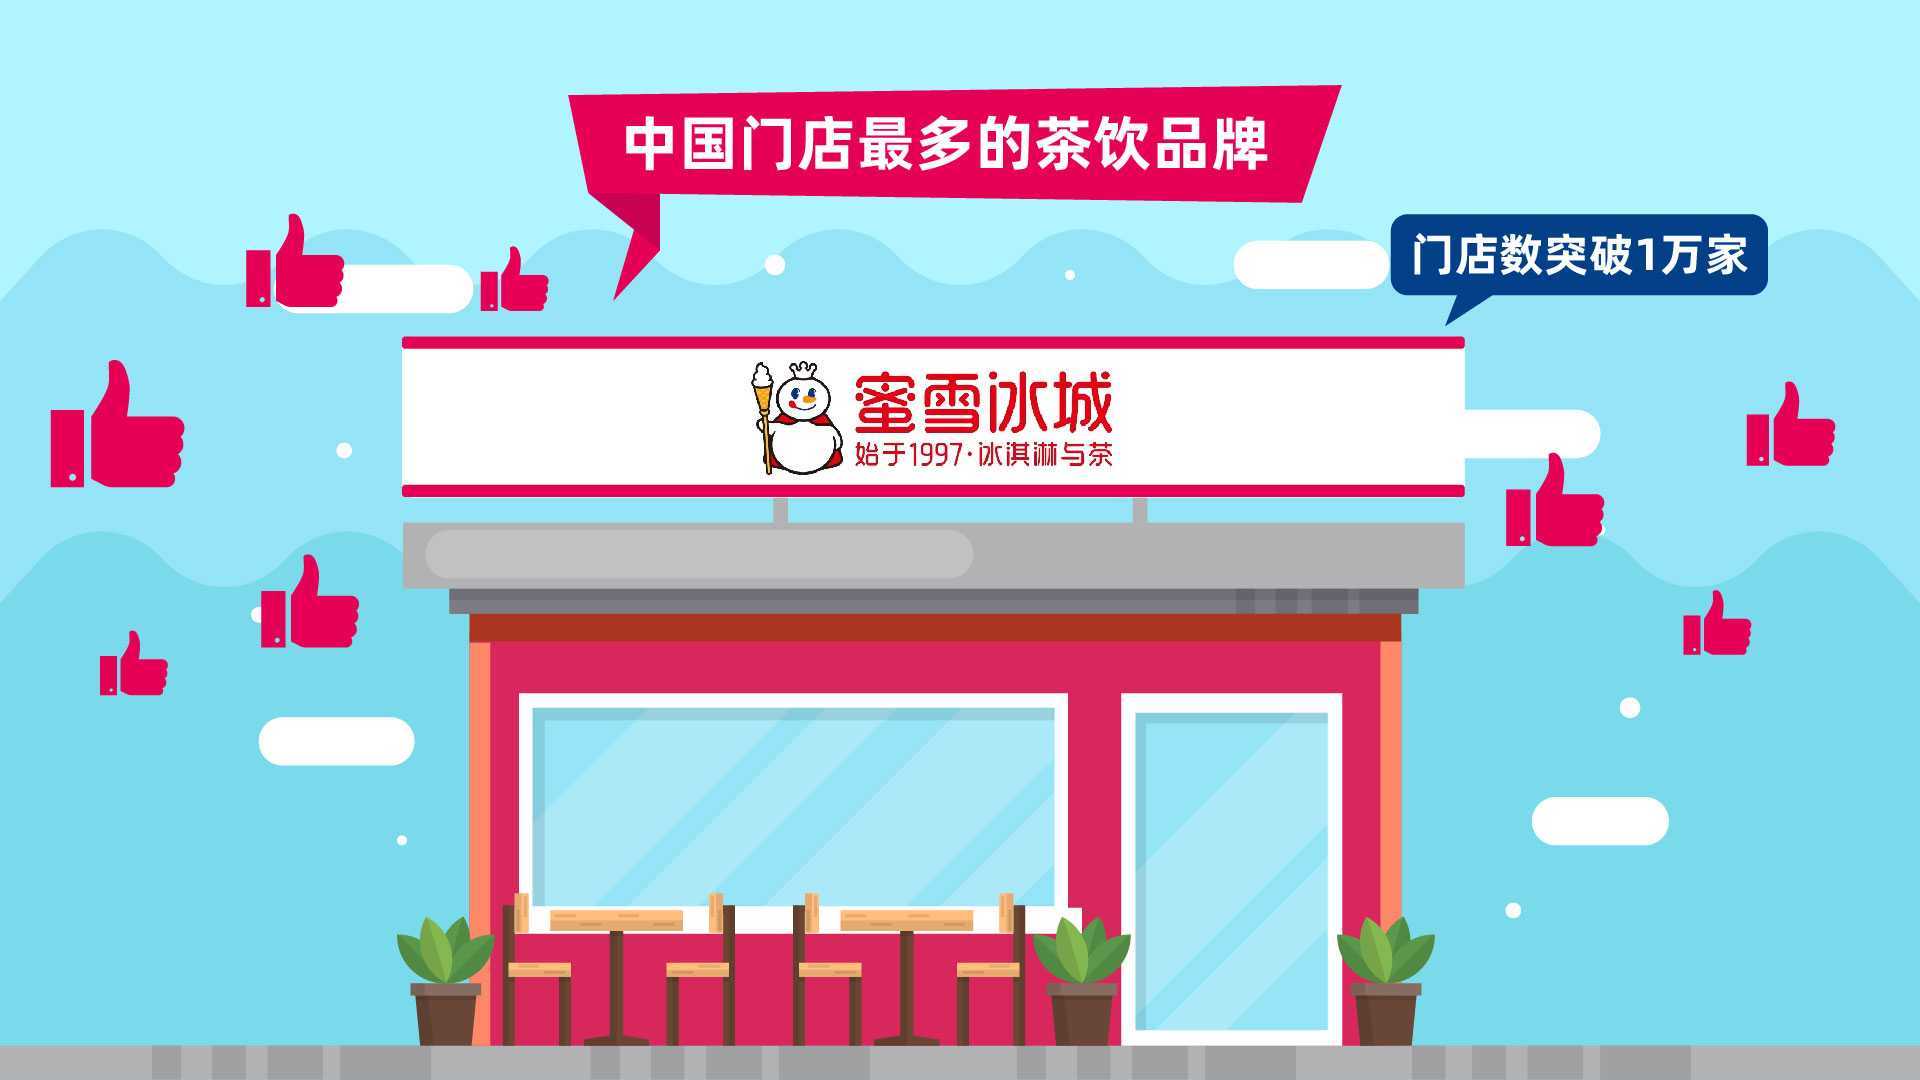 蜜雪冰城支付宝丝路计划MG动画|活动介绍动画|北京MG动画制作